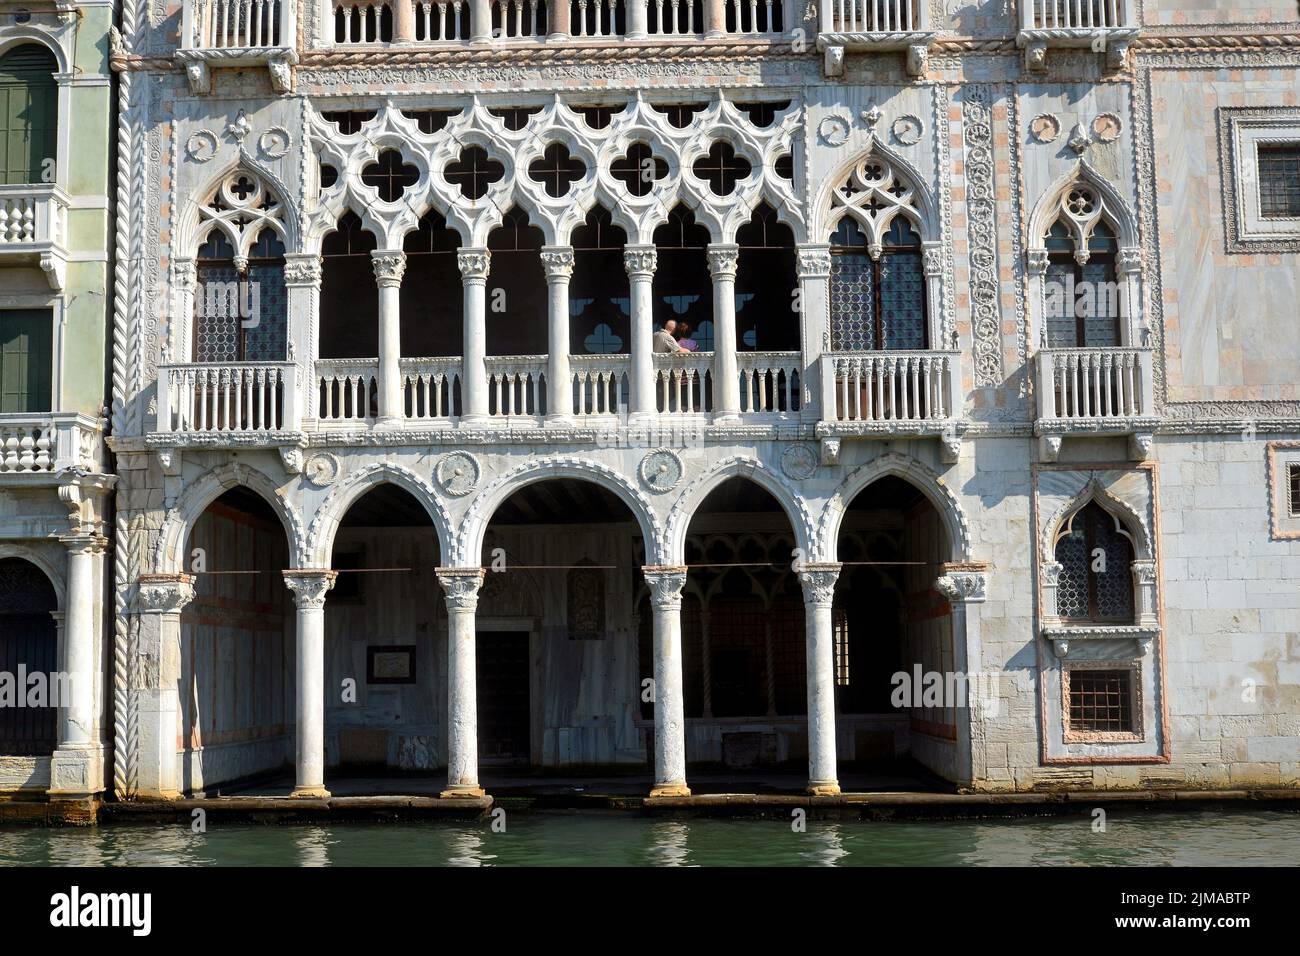 Ca dÂ´ORO, Venice Stock Photo